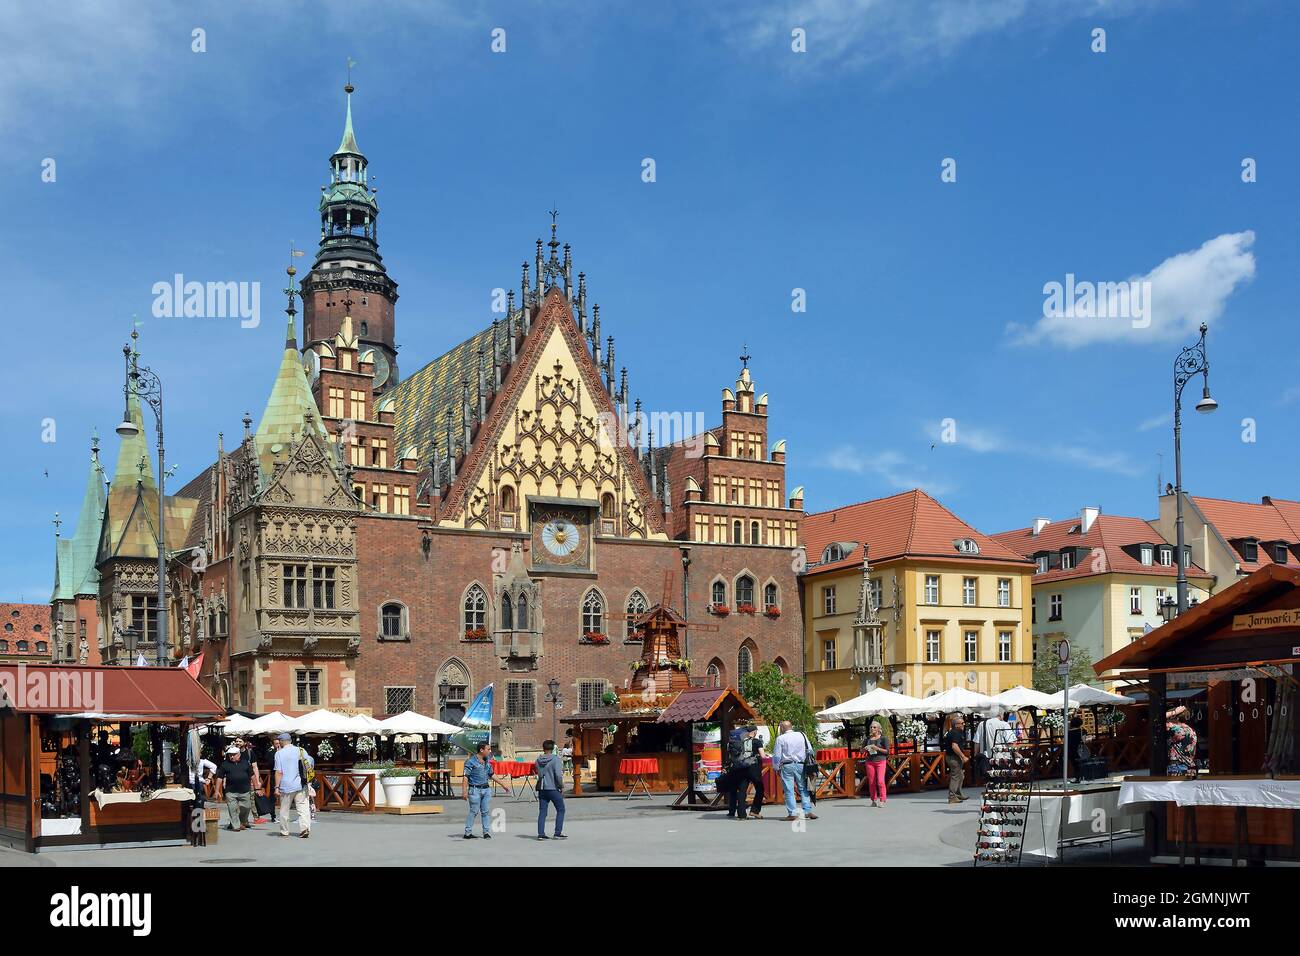 Altes Rathaus am Marktplatz in der Altstadt von Breslau - Polen. Stockfoto